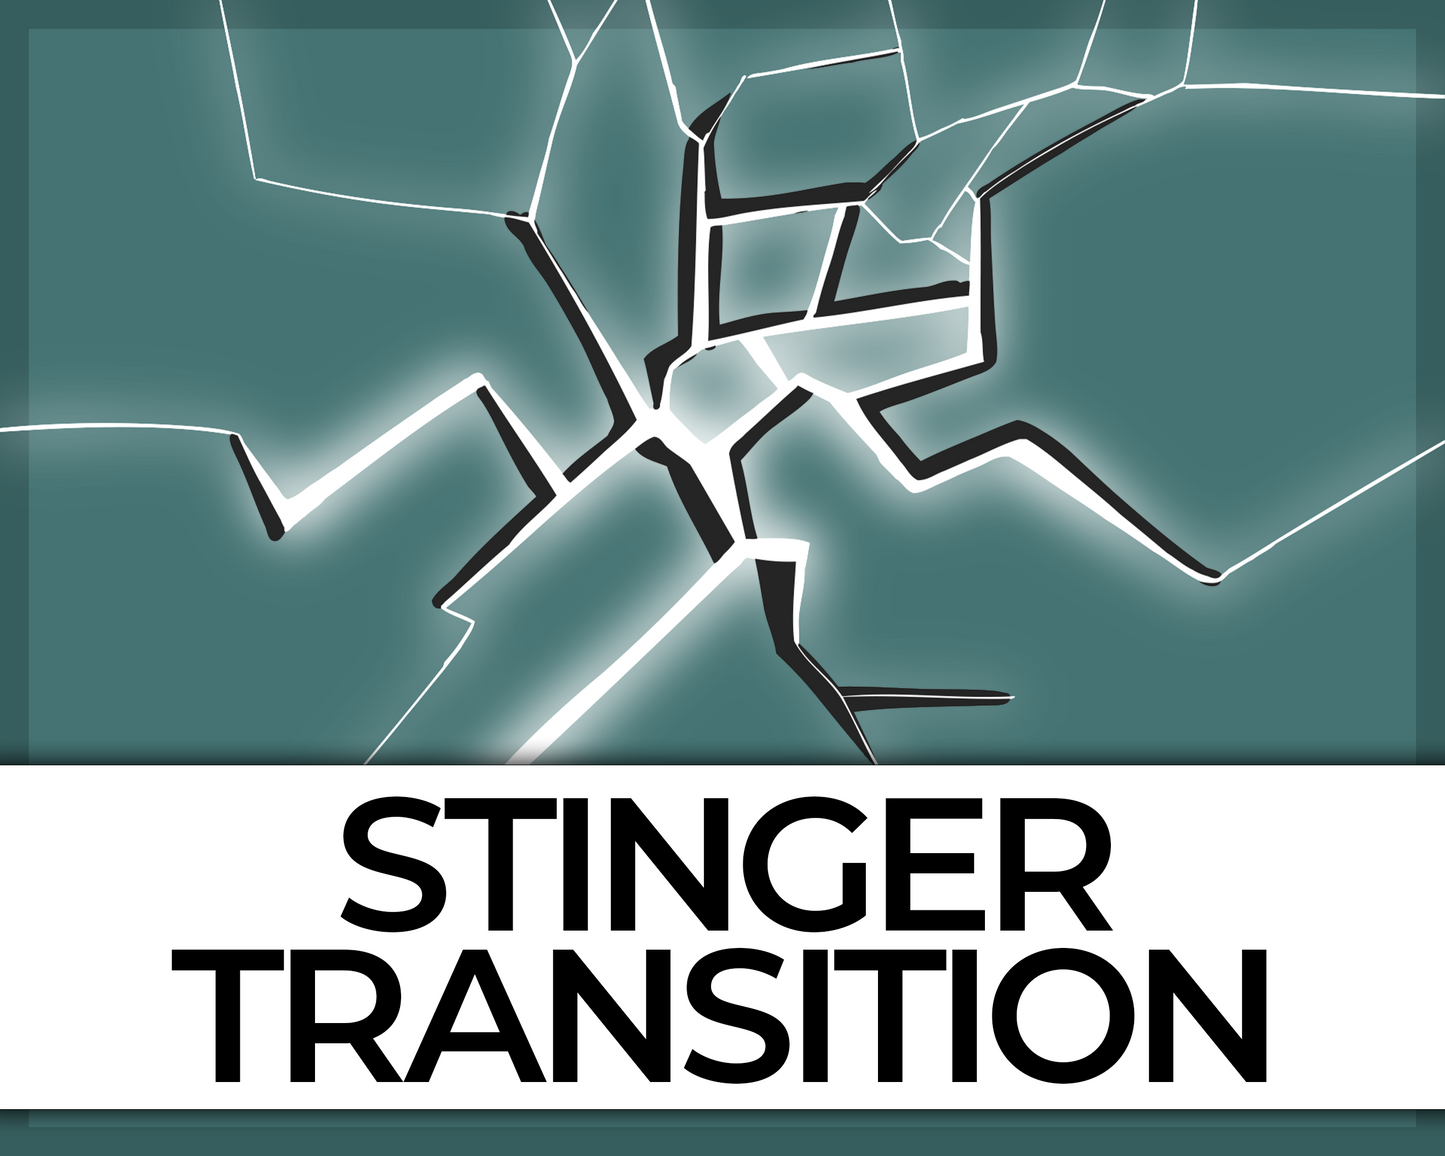 Breaking Glass Stinger Transition